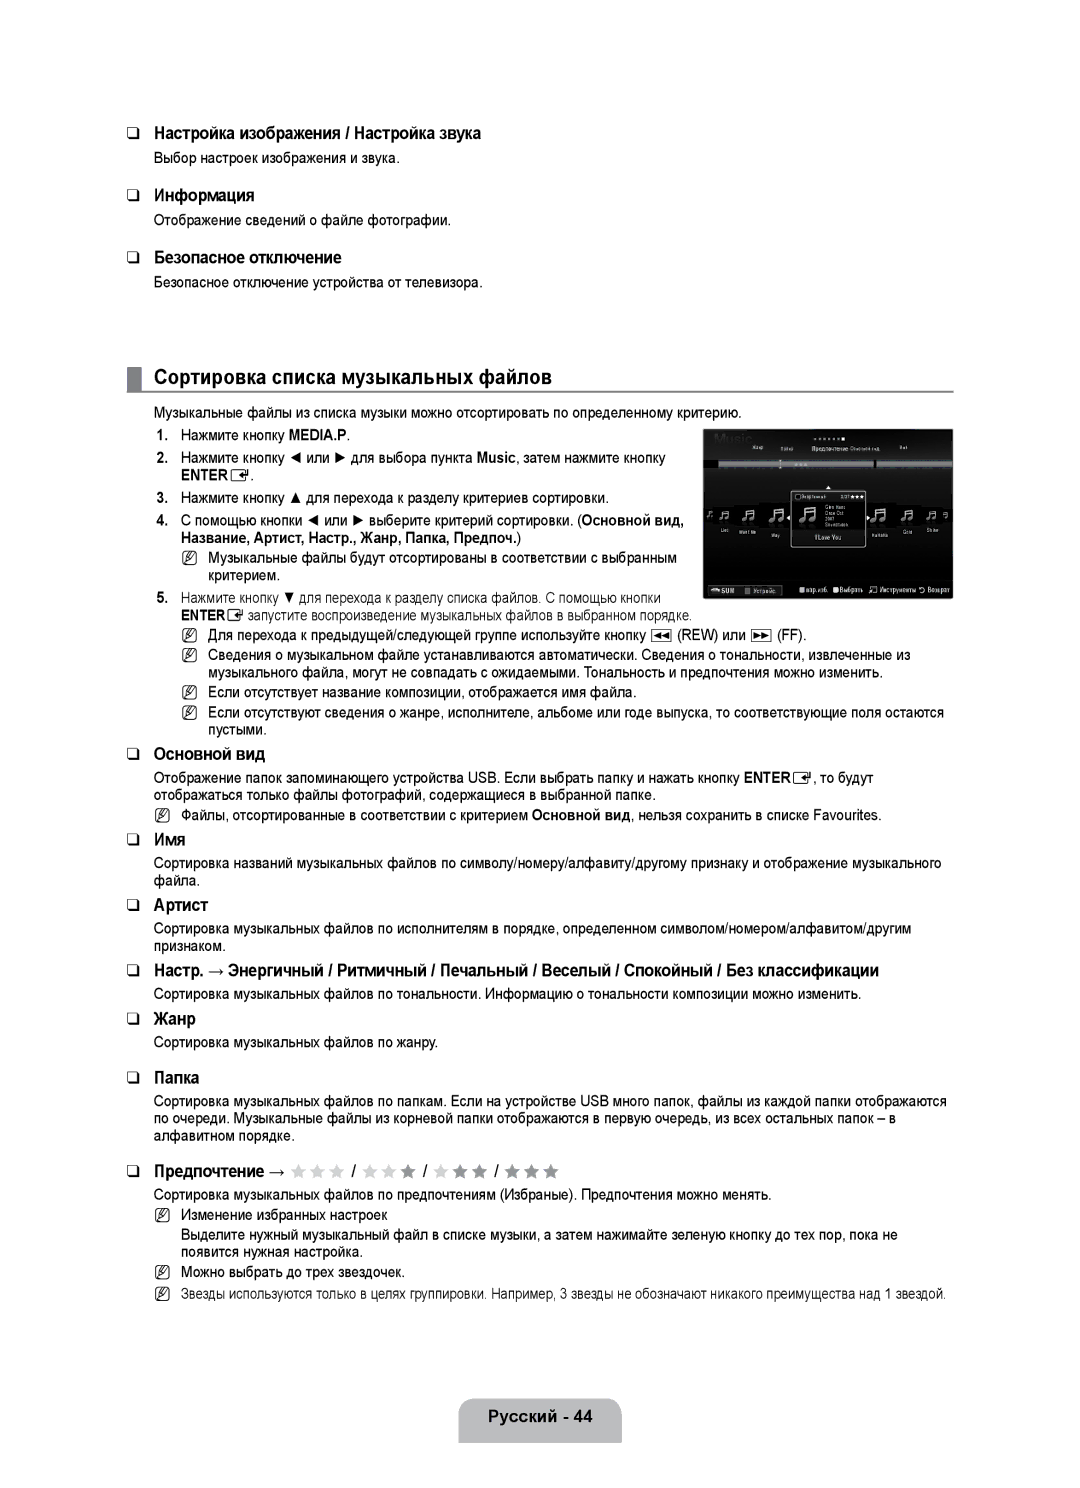 Samsung UE46B7020WWXXN Сортировка списка музыкальных файлов, Настройка изображения / Настройка звука, Имя, Артист, Жанр 